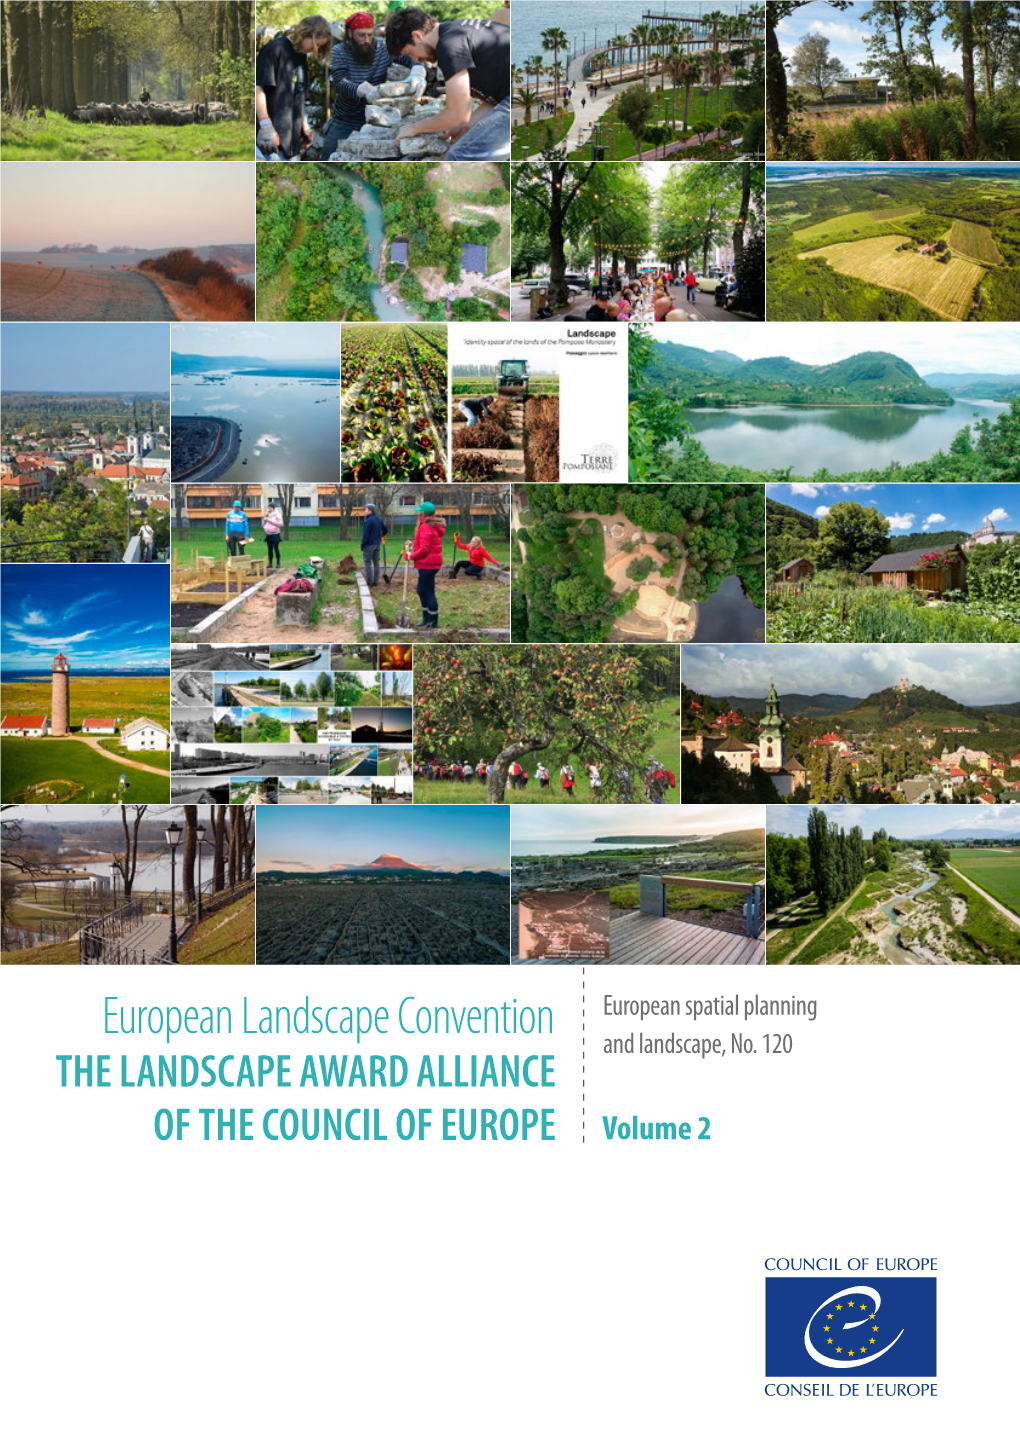 European Landscape Convention and Landscape, No